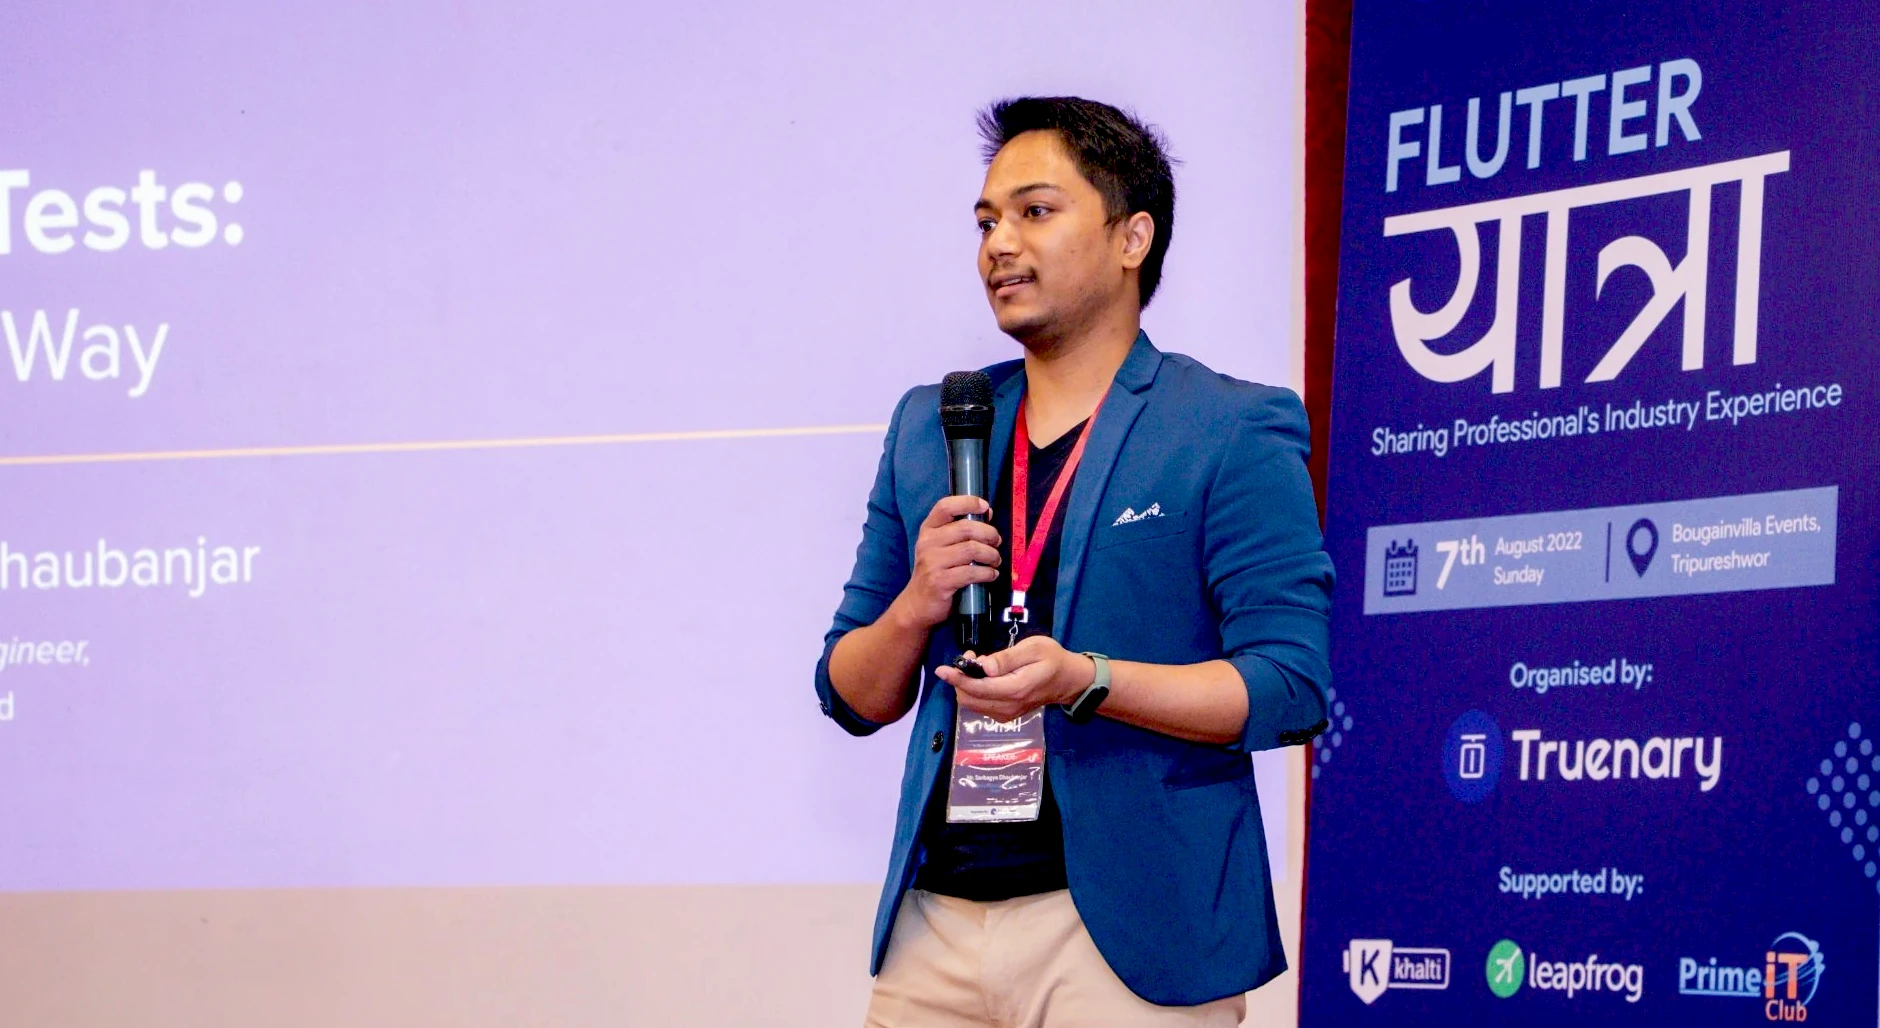 Sarbagya Dhaubanjar speaking at a Flutter event